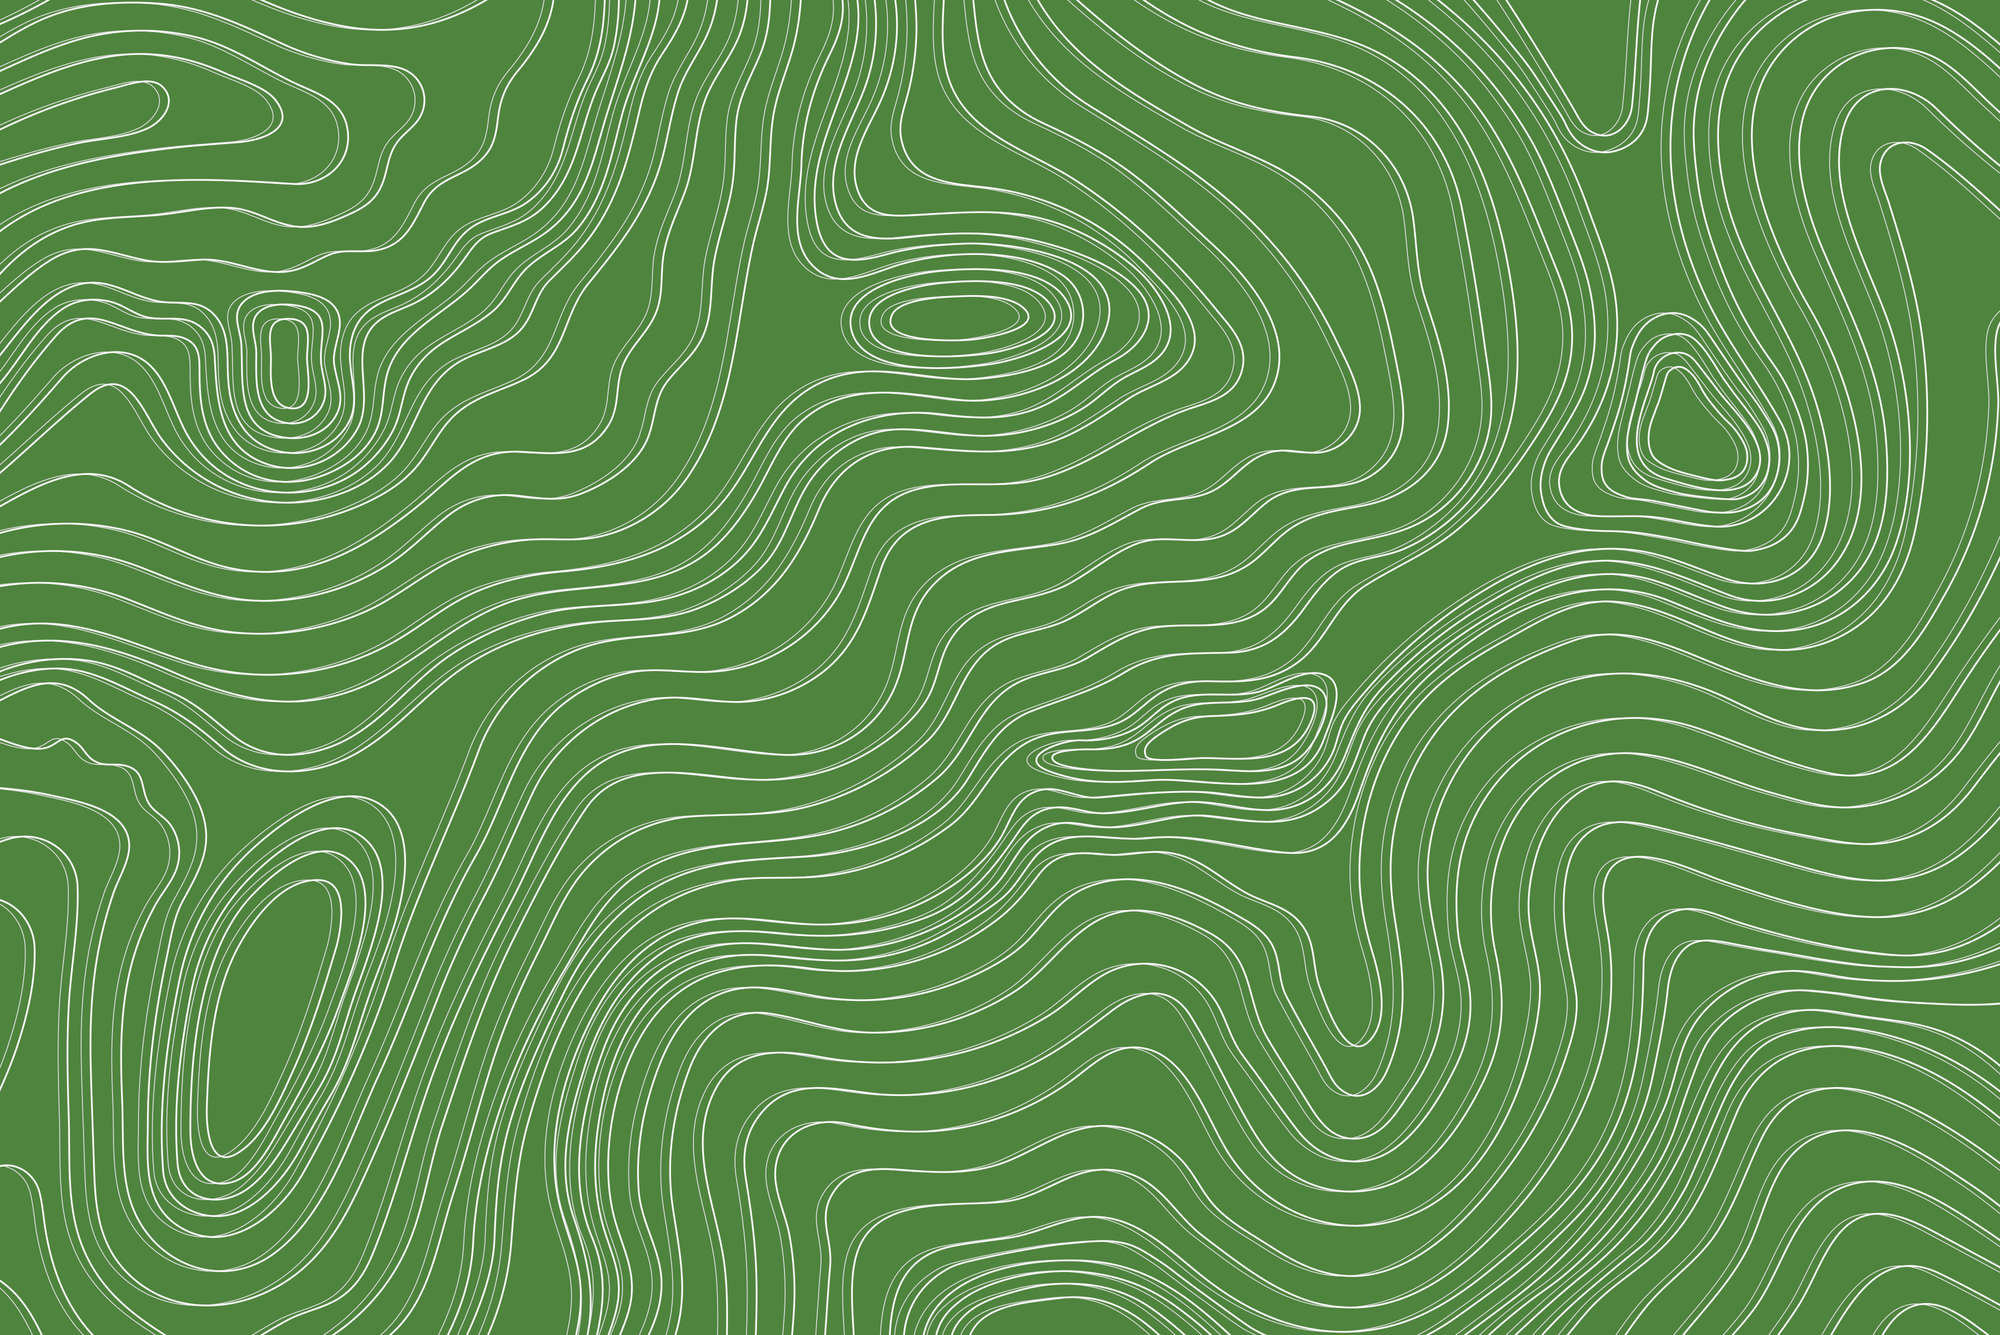             Papel pintado con diseño de olas y círculos en color verde sobre vellón liso de primera calidad
        